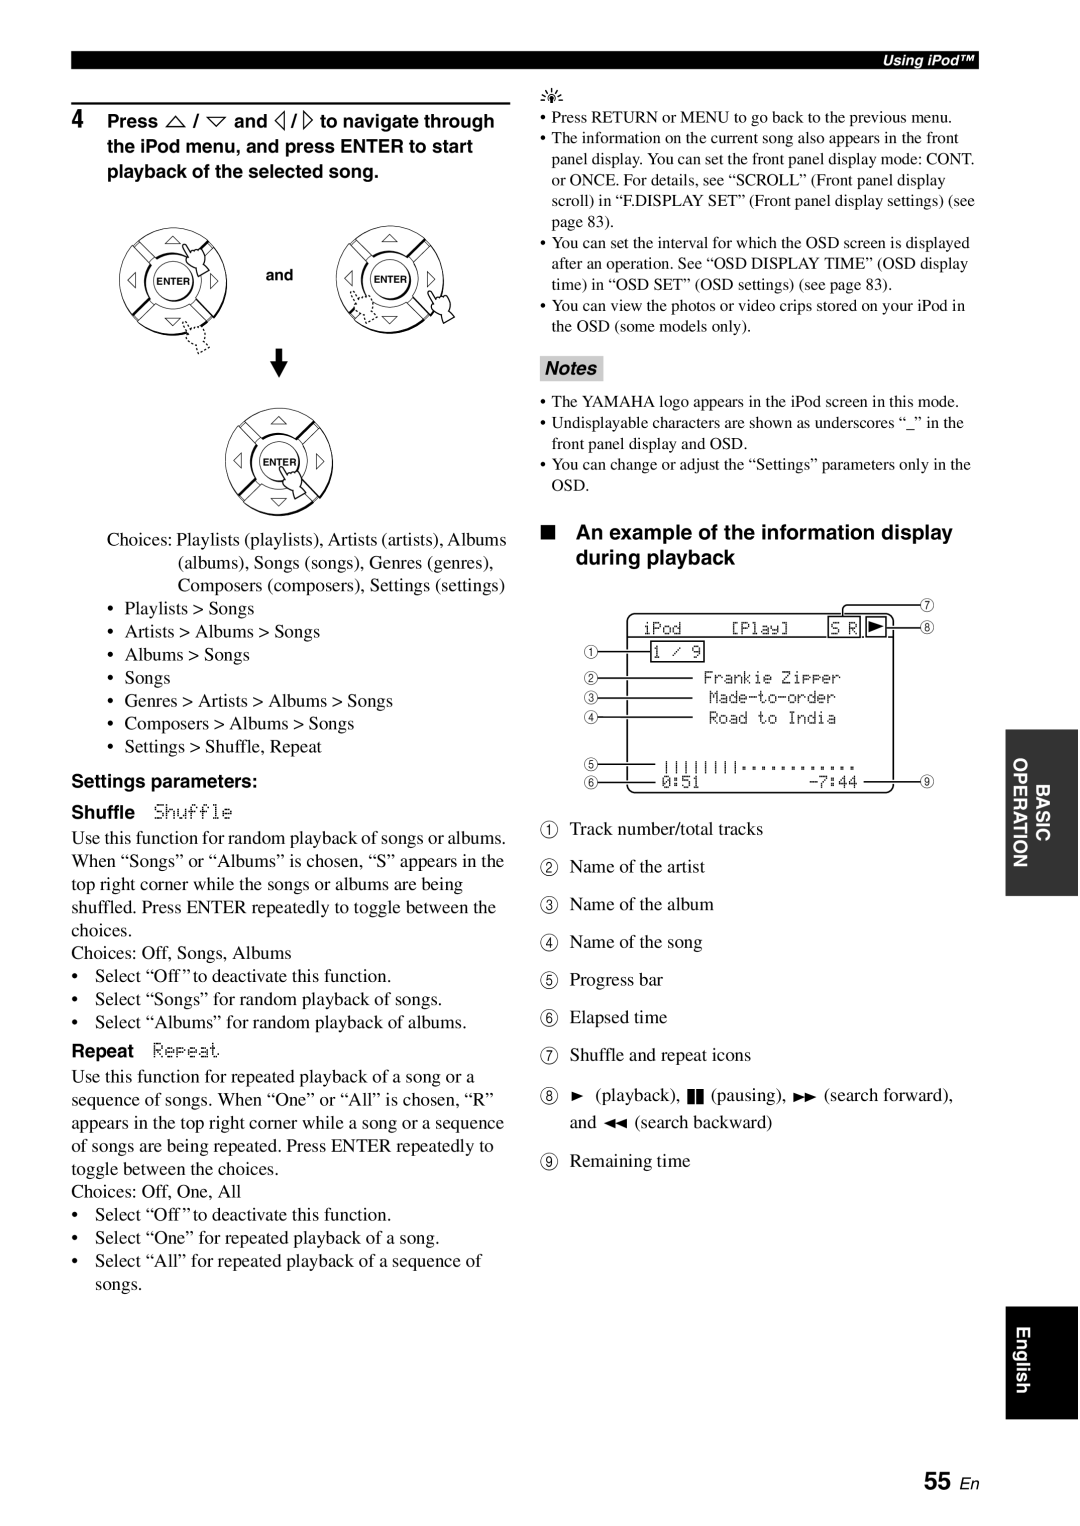 Yamaha YSP-3050 owner manual 55 En, Settings parameters Shuffle Shuffle, Repeat Repeat 